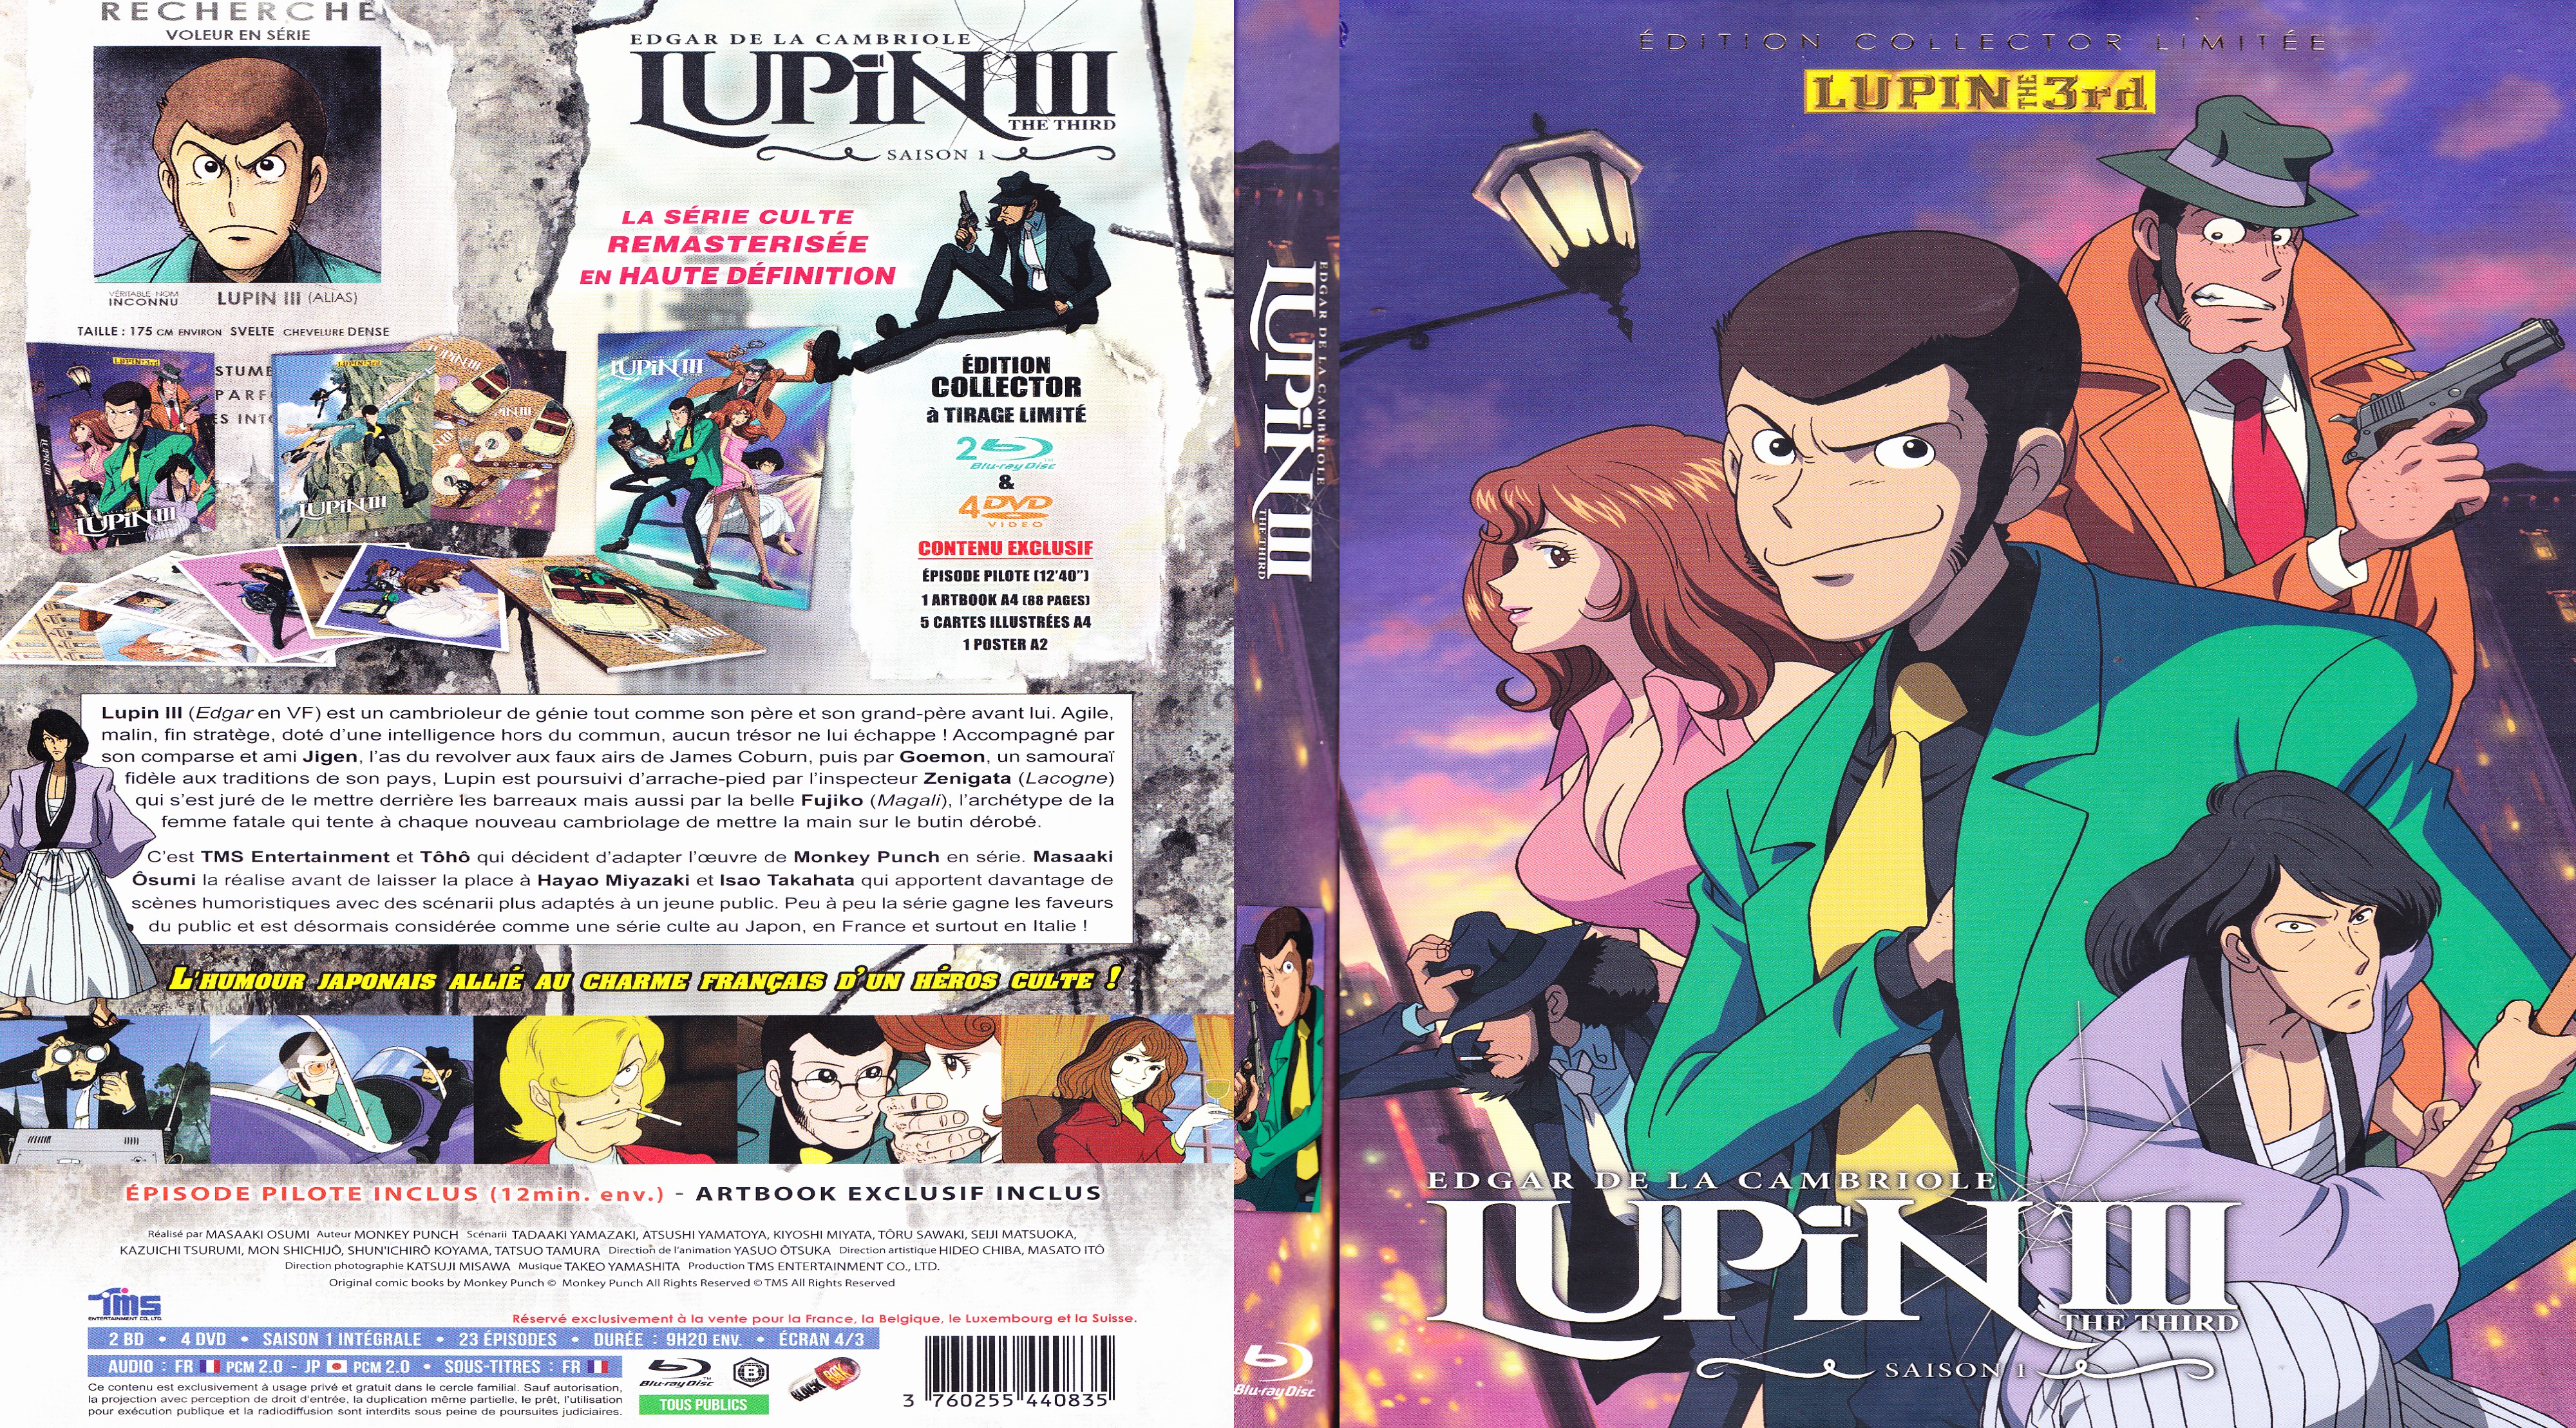 Jaquette DVD Lupin III (BLU-RAY)